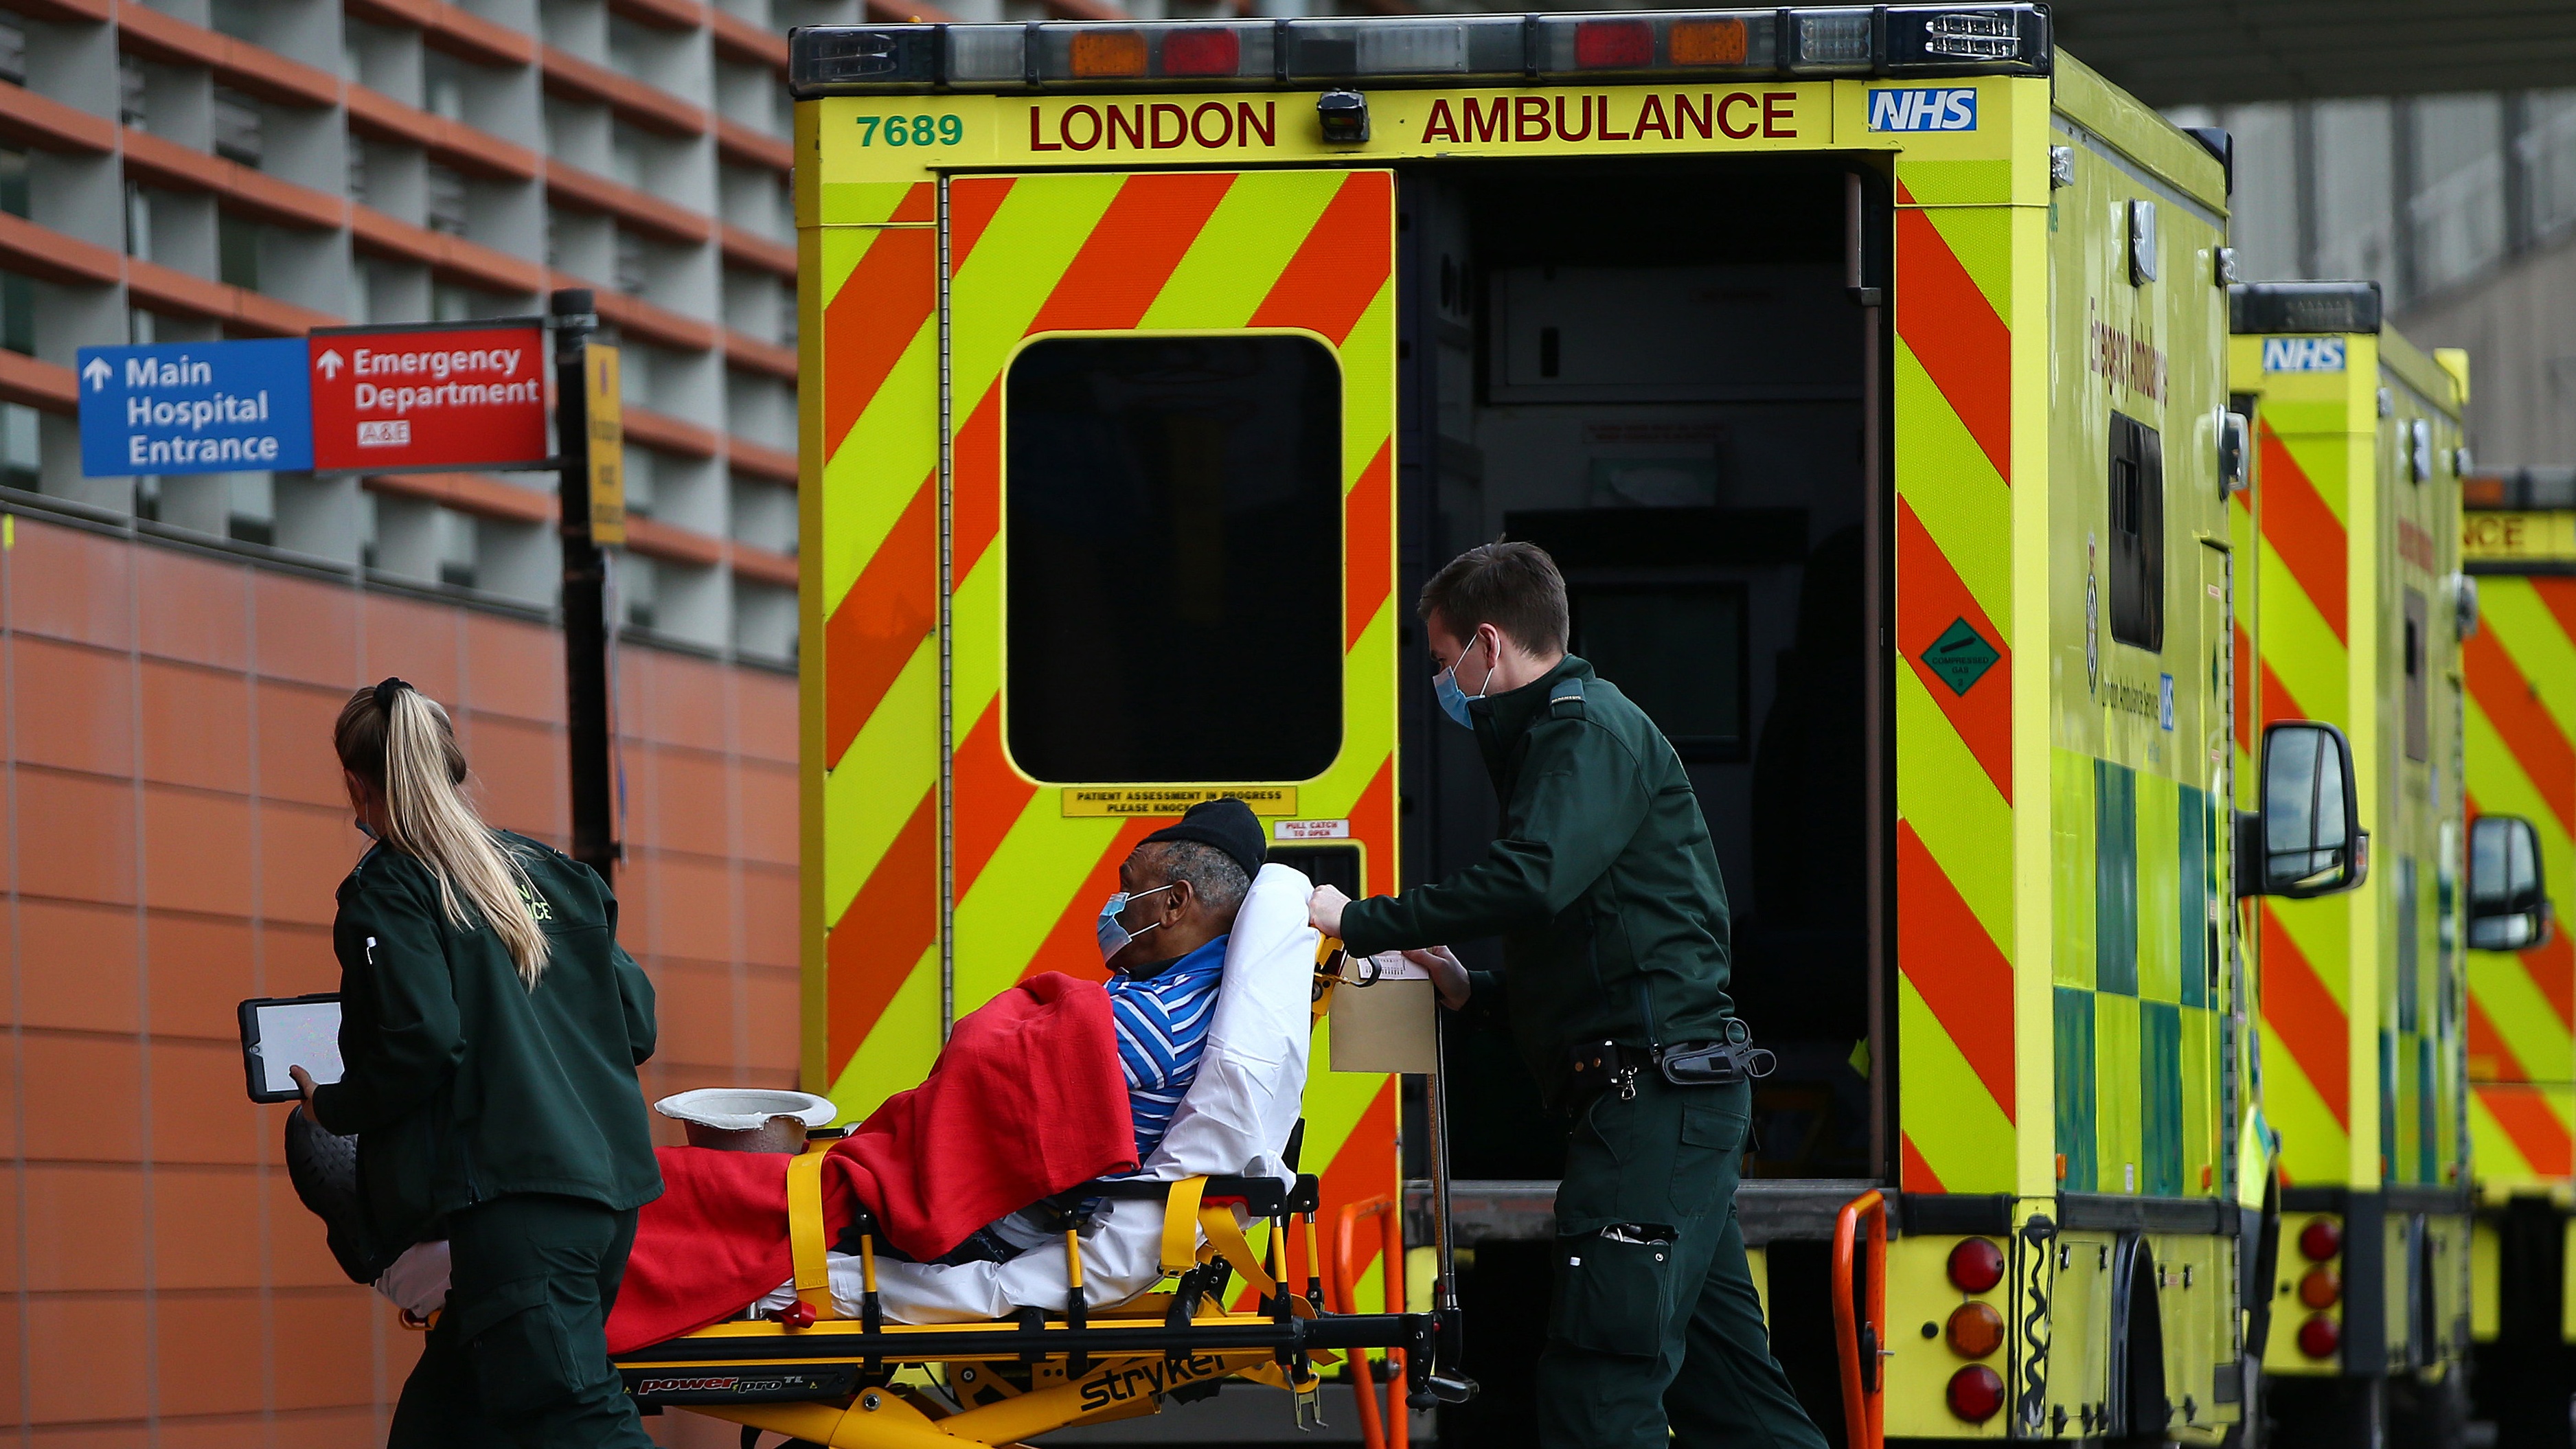 Queue of ambulances outside The Royal London Hospital